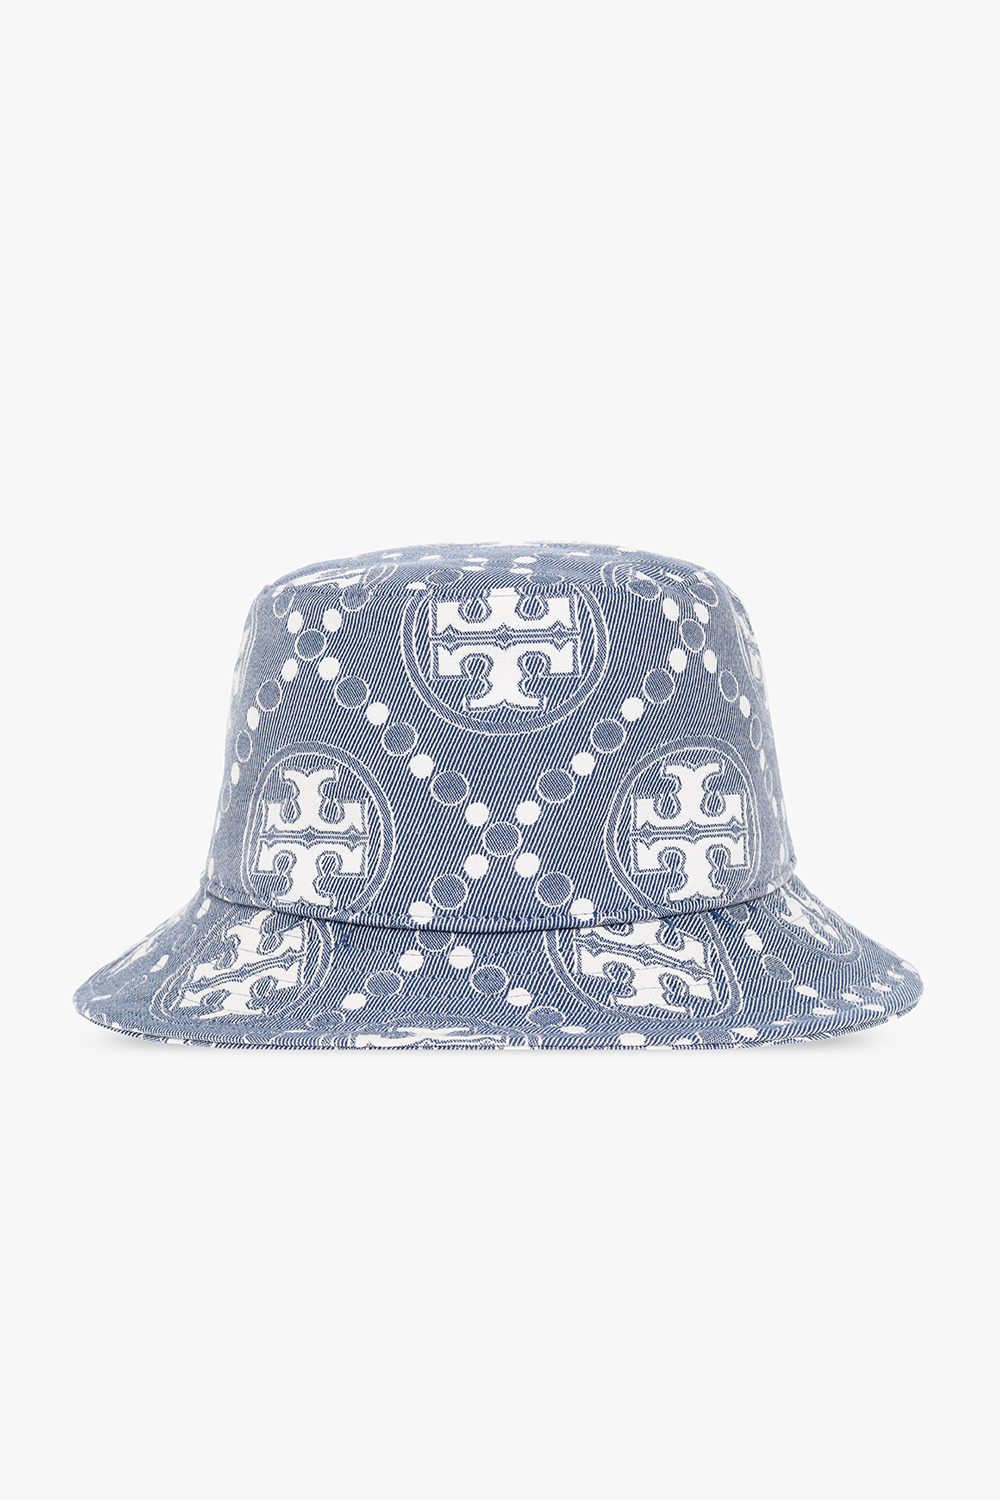 Louis Vuitton Monogram Essential Reversible Bucket Hat Blue Size 58 F/S